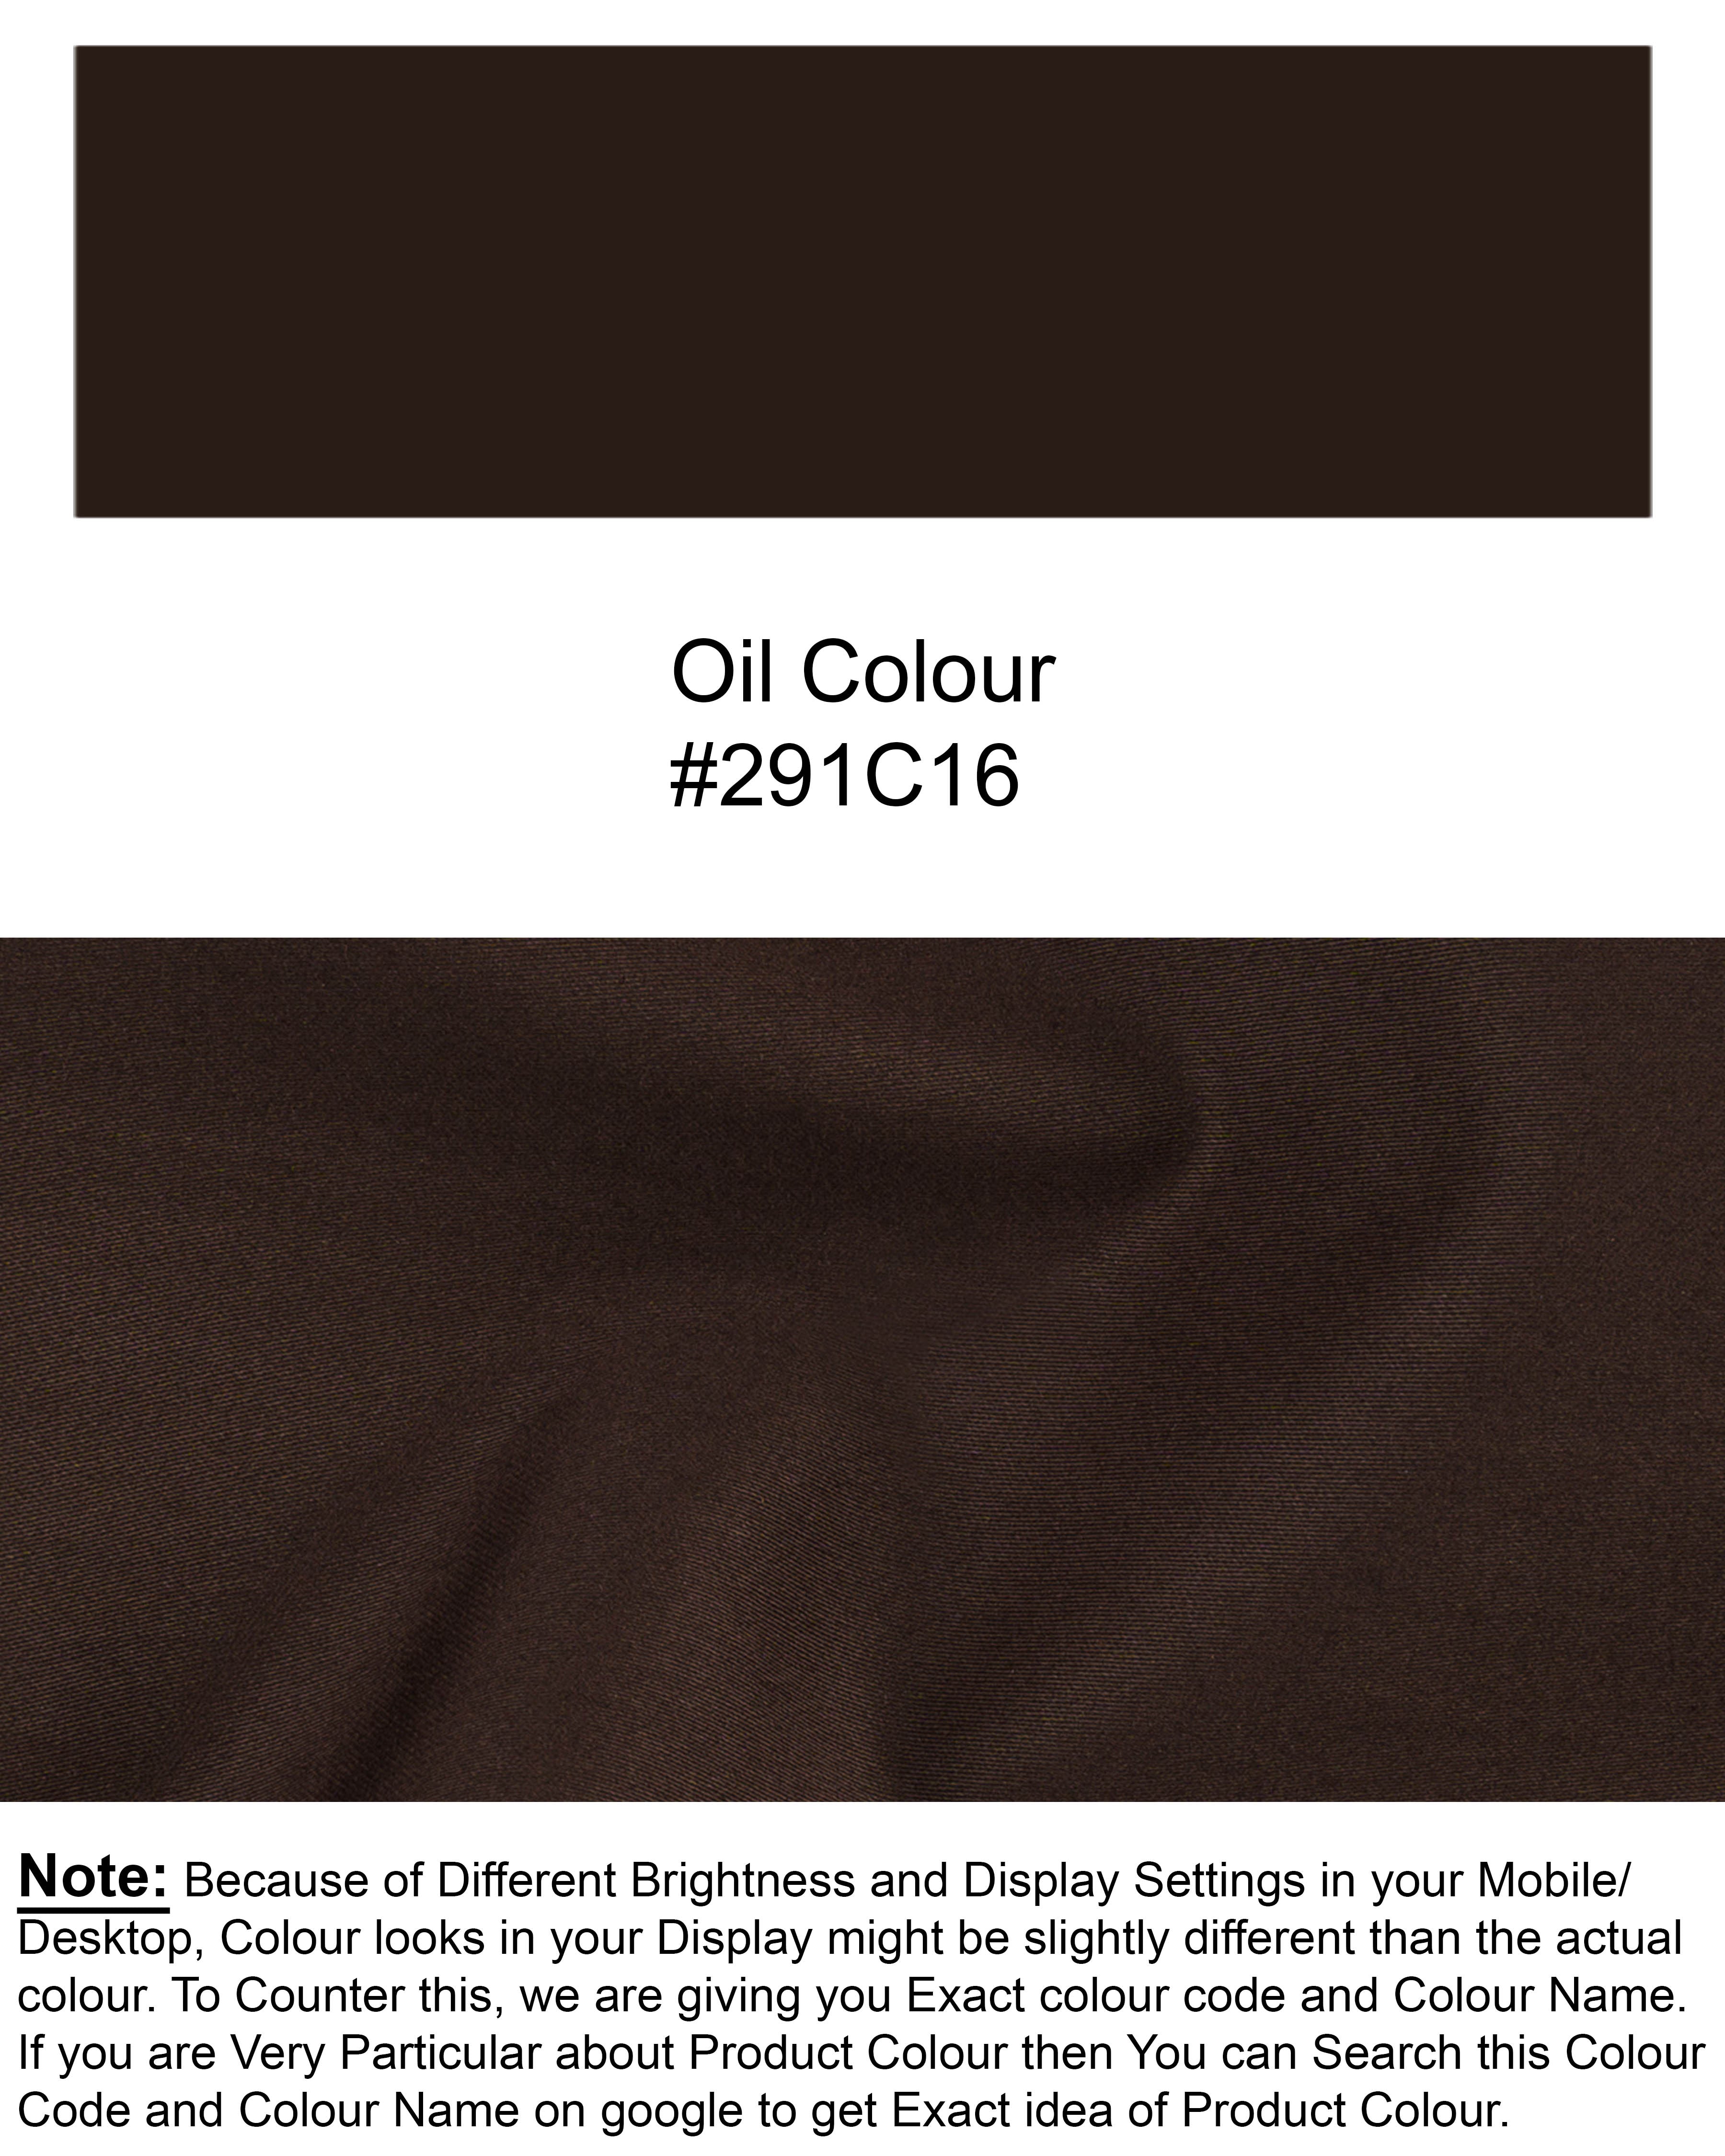 Oil Brown Belt Closure Waistcoat V1748-36, V1748-38, V1748-40, V1748-42, V1748-44, V1748-46, V1748-48, V1748-50, V1748-52, V1748-54, V1748-56, V1748-58, V1748-60